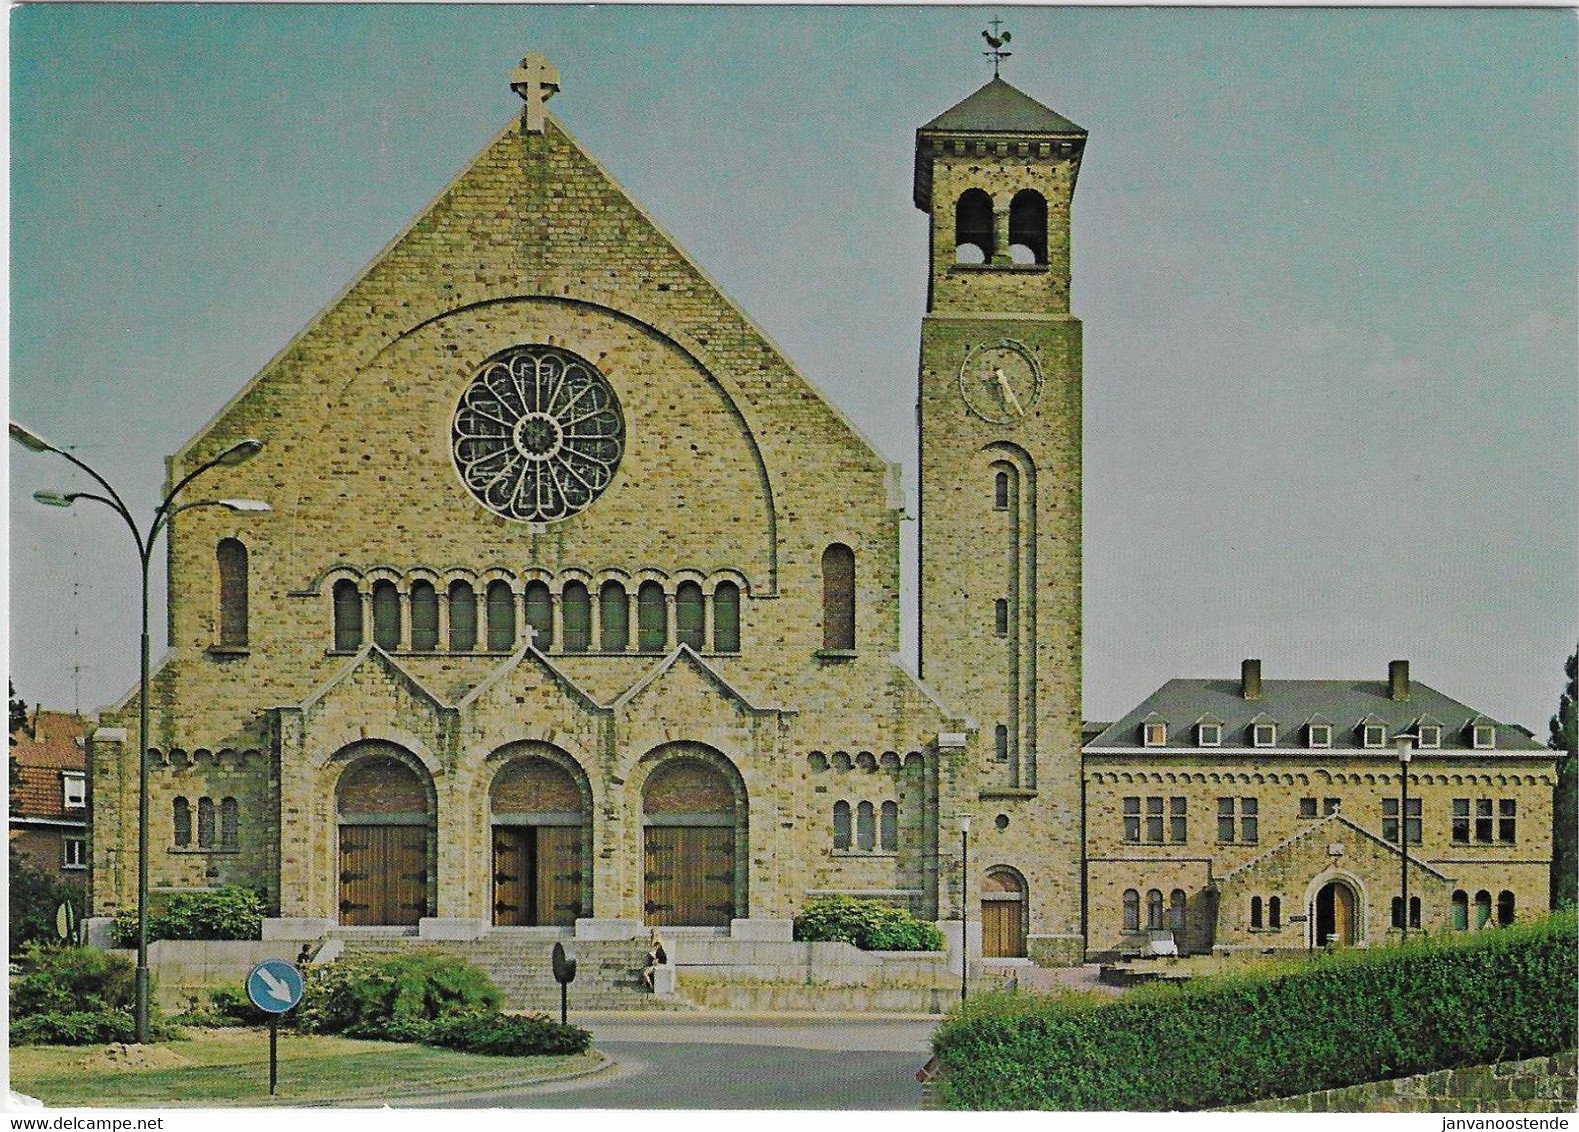 Gr1524 - Woluwe-St-Pierre - Eglise N.D. Des Grâces - Woluwe-St-Pierre - St-Pieters-Woluwe